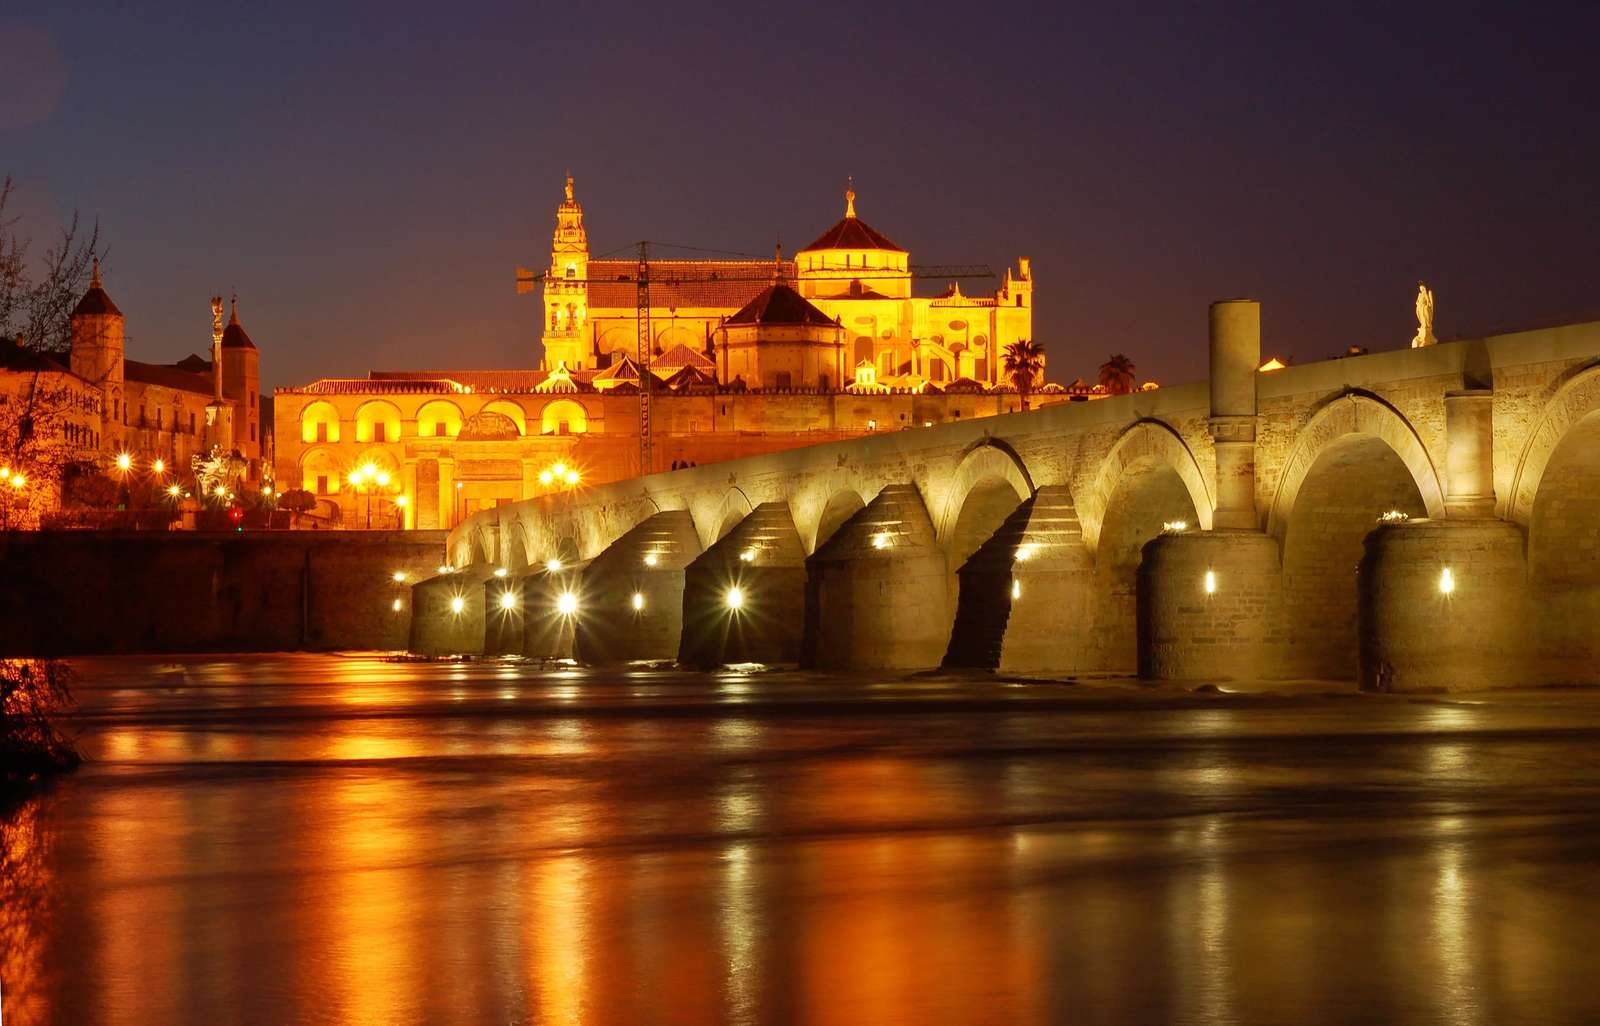 Римский мост в Кордове, Испания пазл онлайн из фото